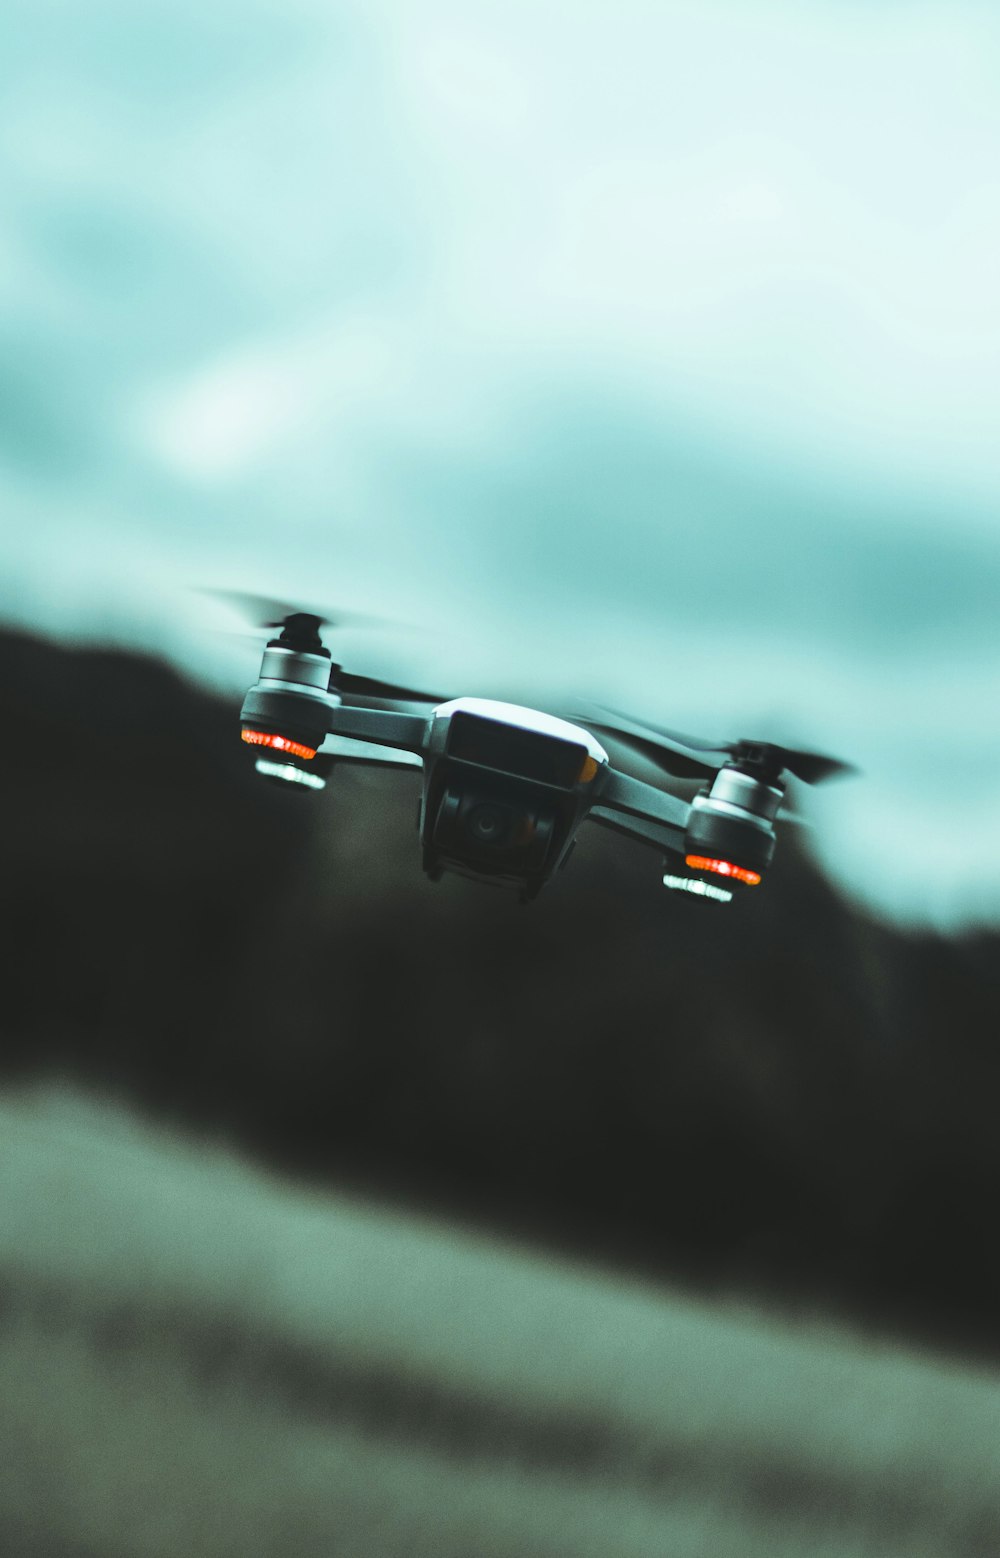 Dron cuadricóptero negro volando en el aire